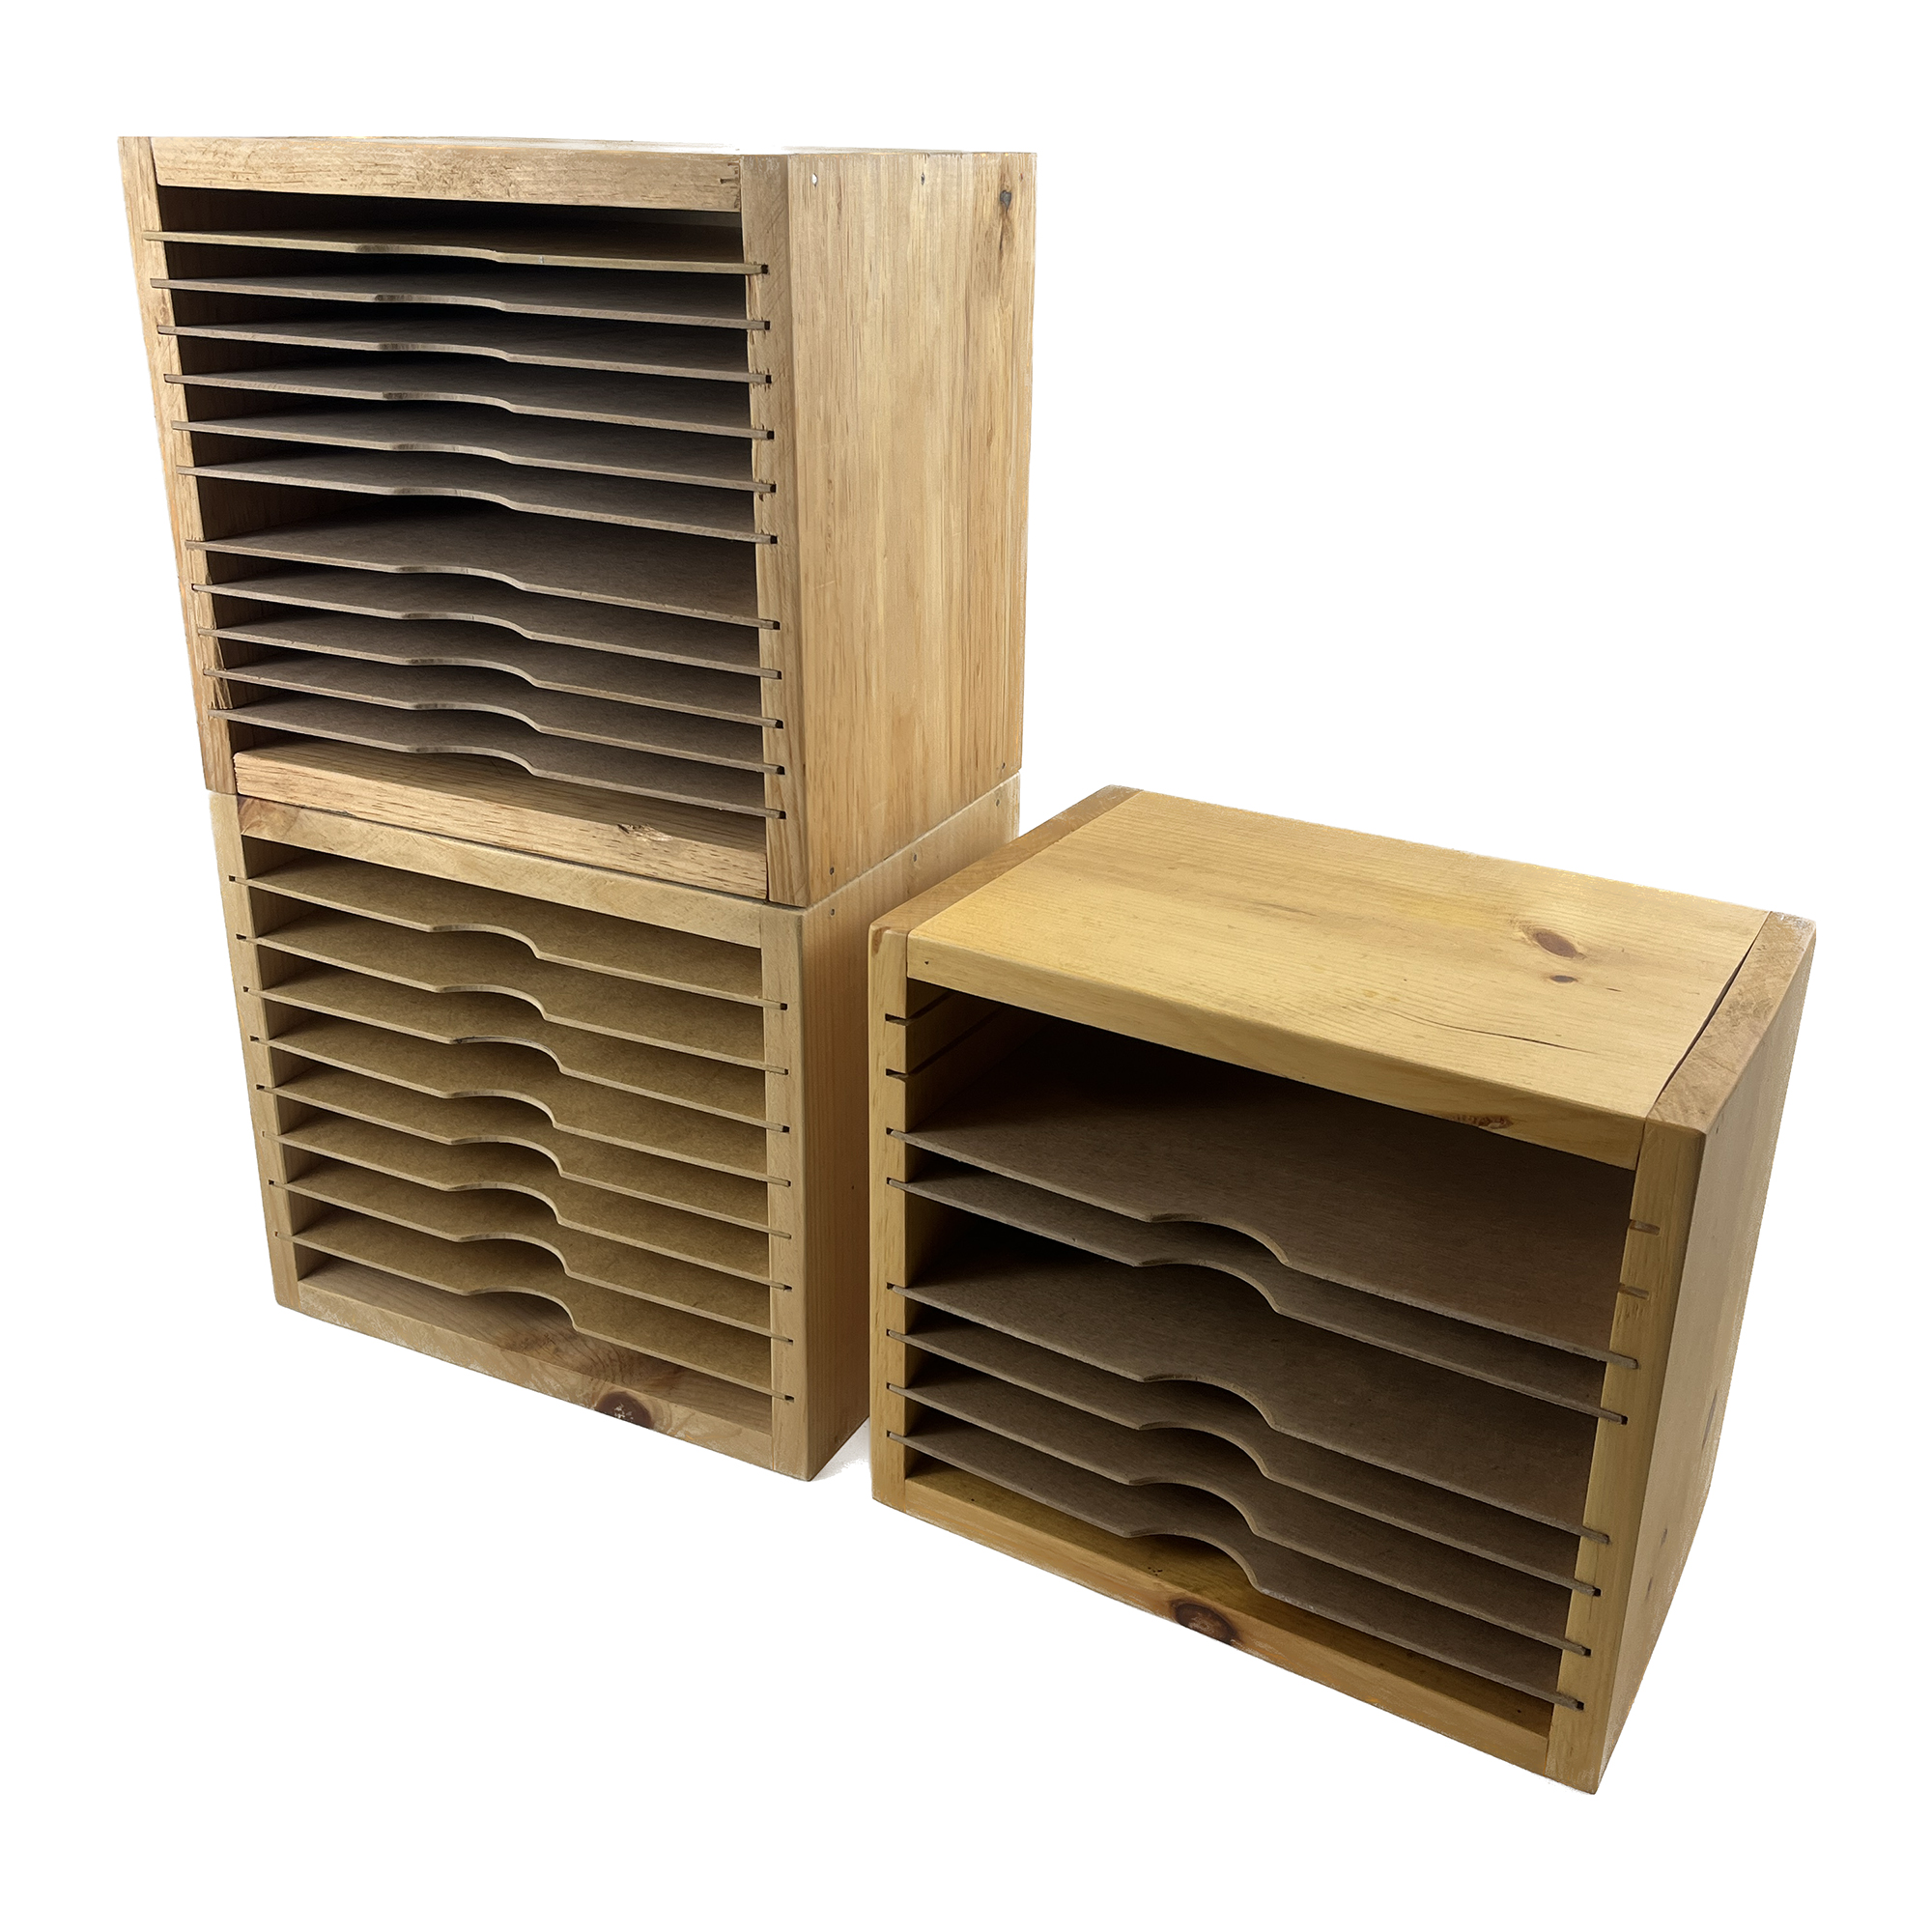 Sandpaper Storage Shelves